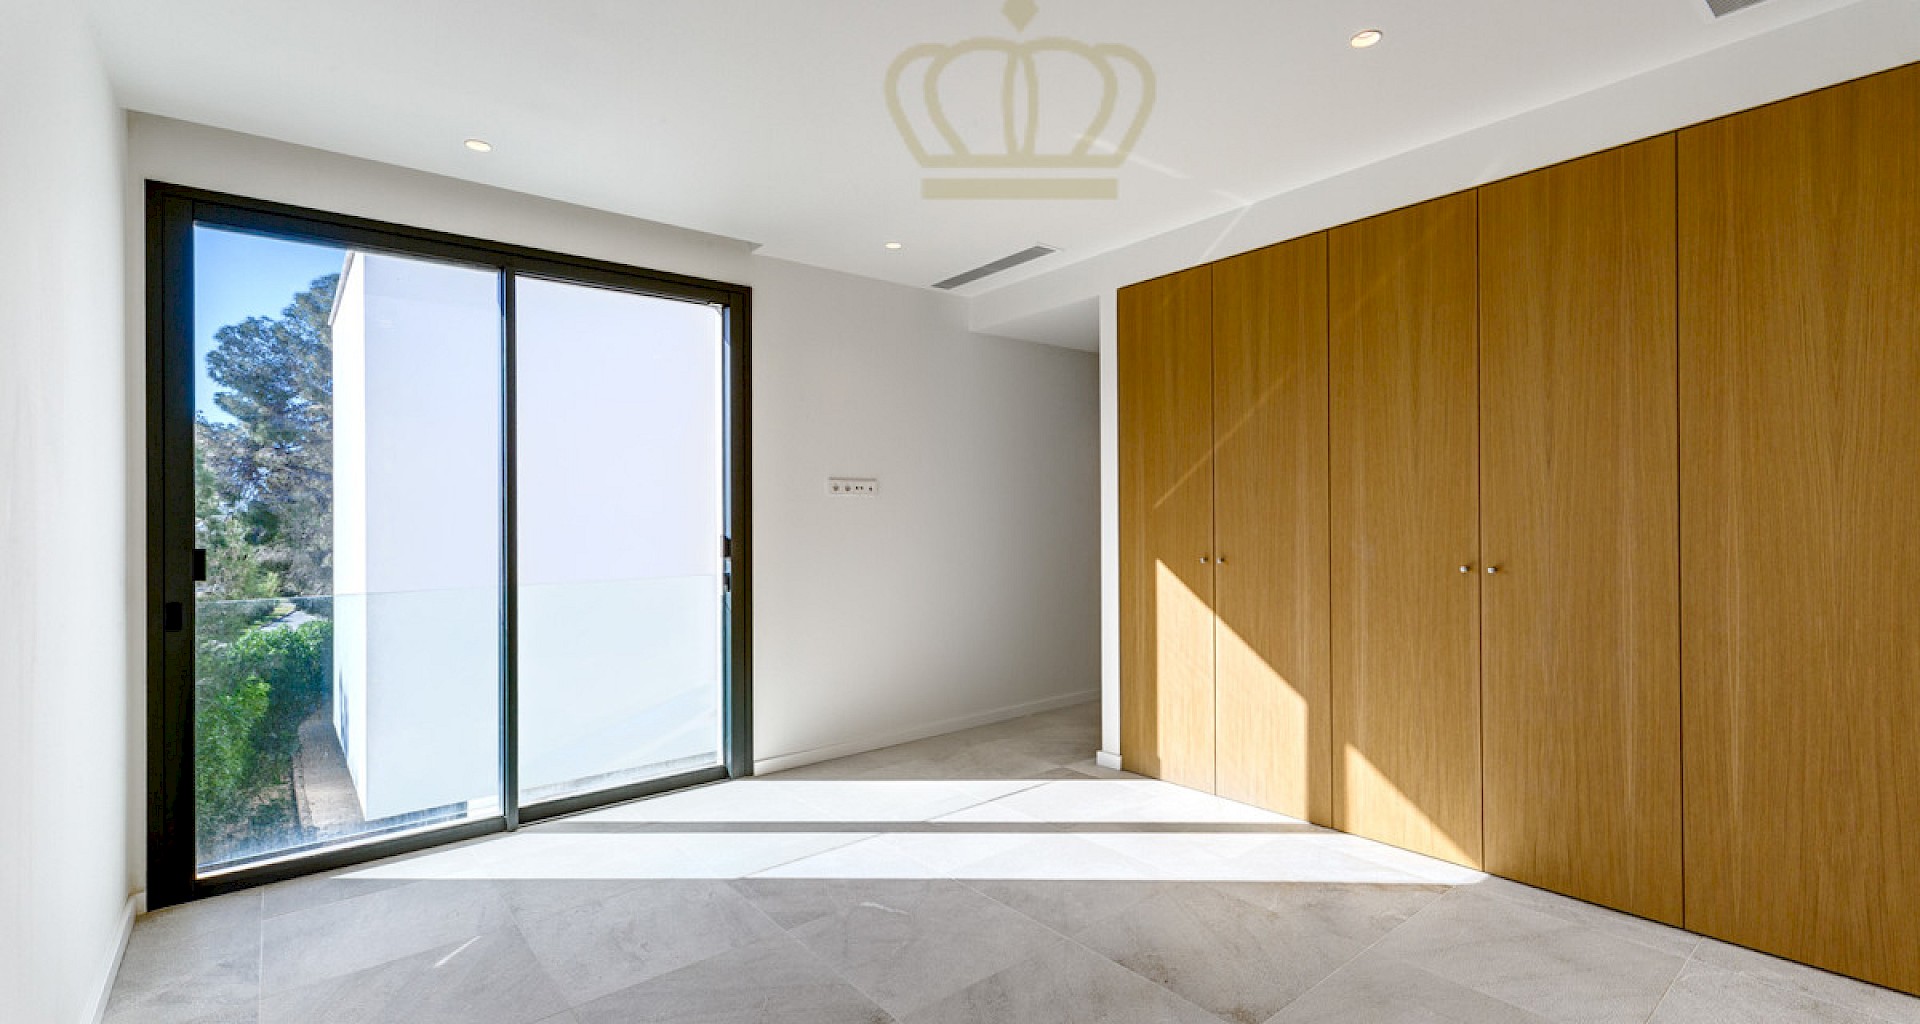 KROHN & LUEDEMANN Villa minimalista de nueva construcción cerca de Port Adriano para primera ocupación 